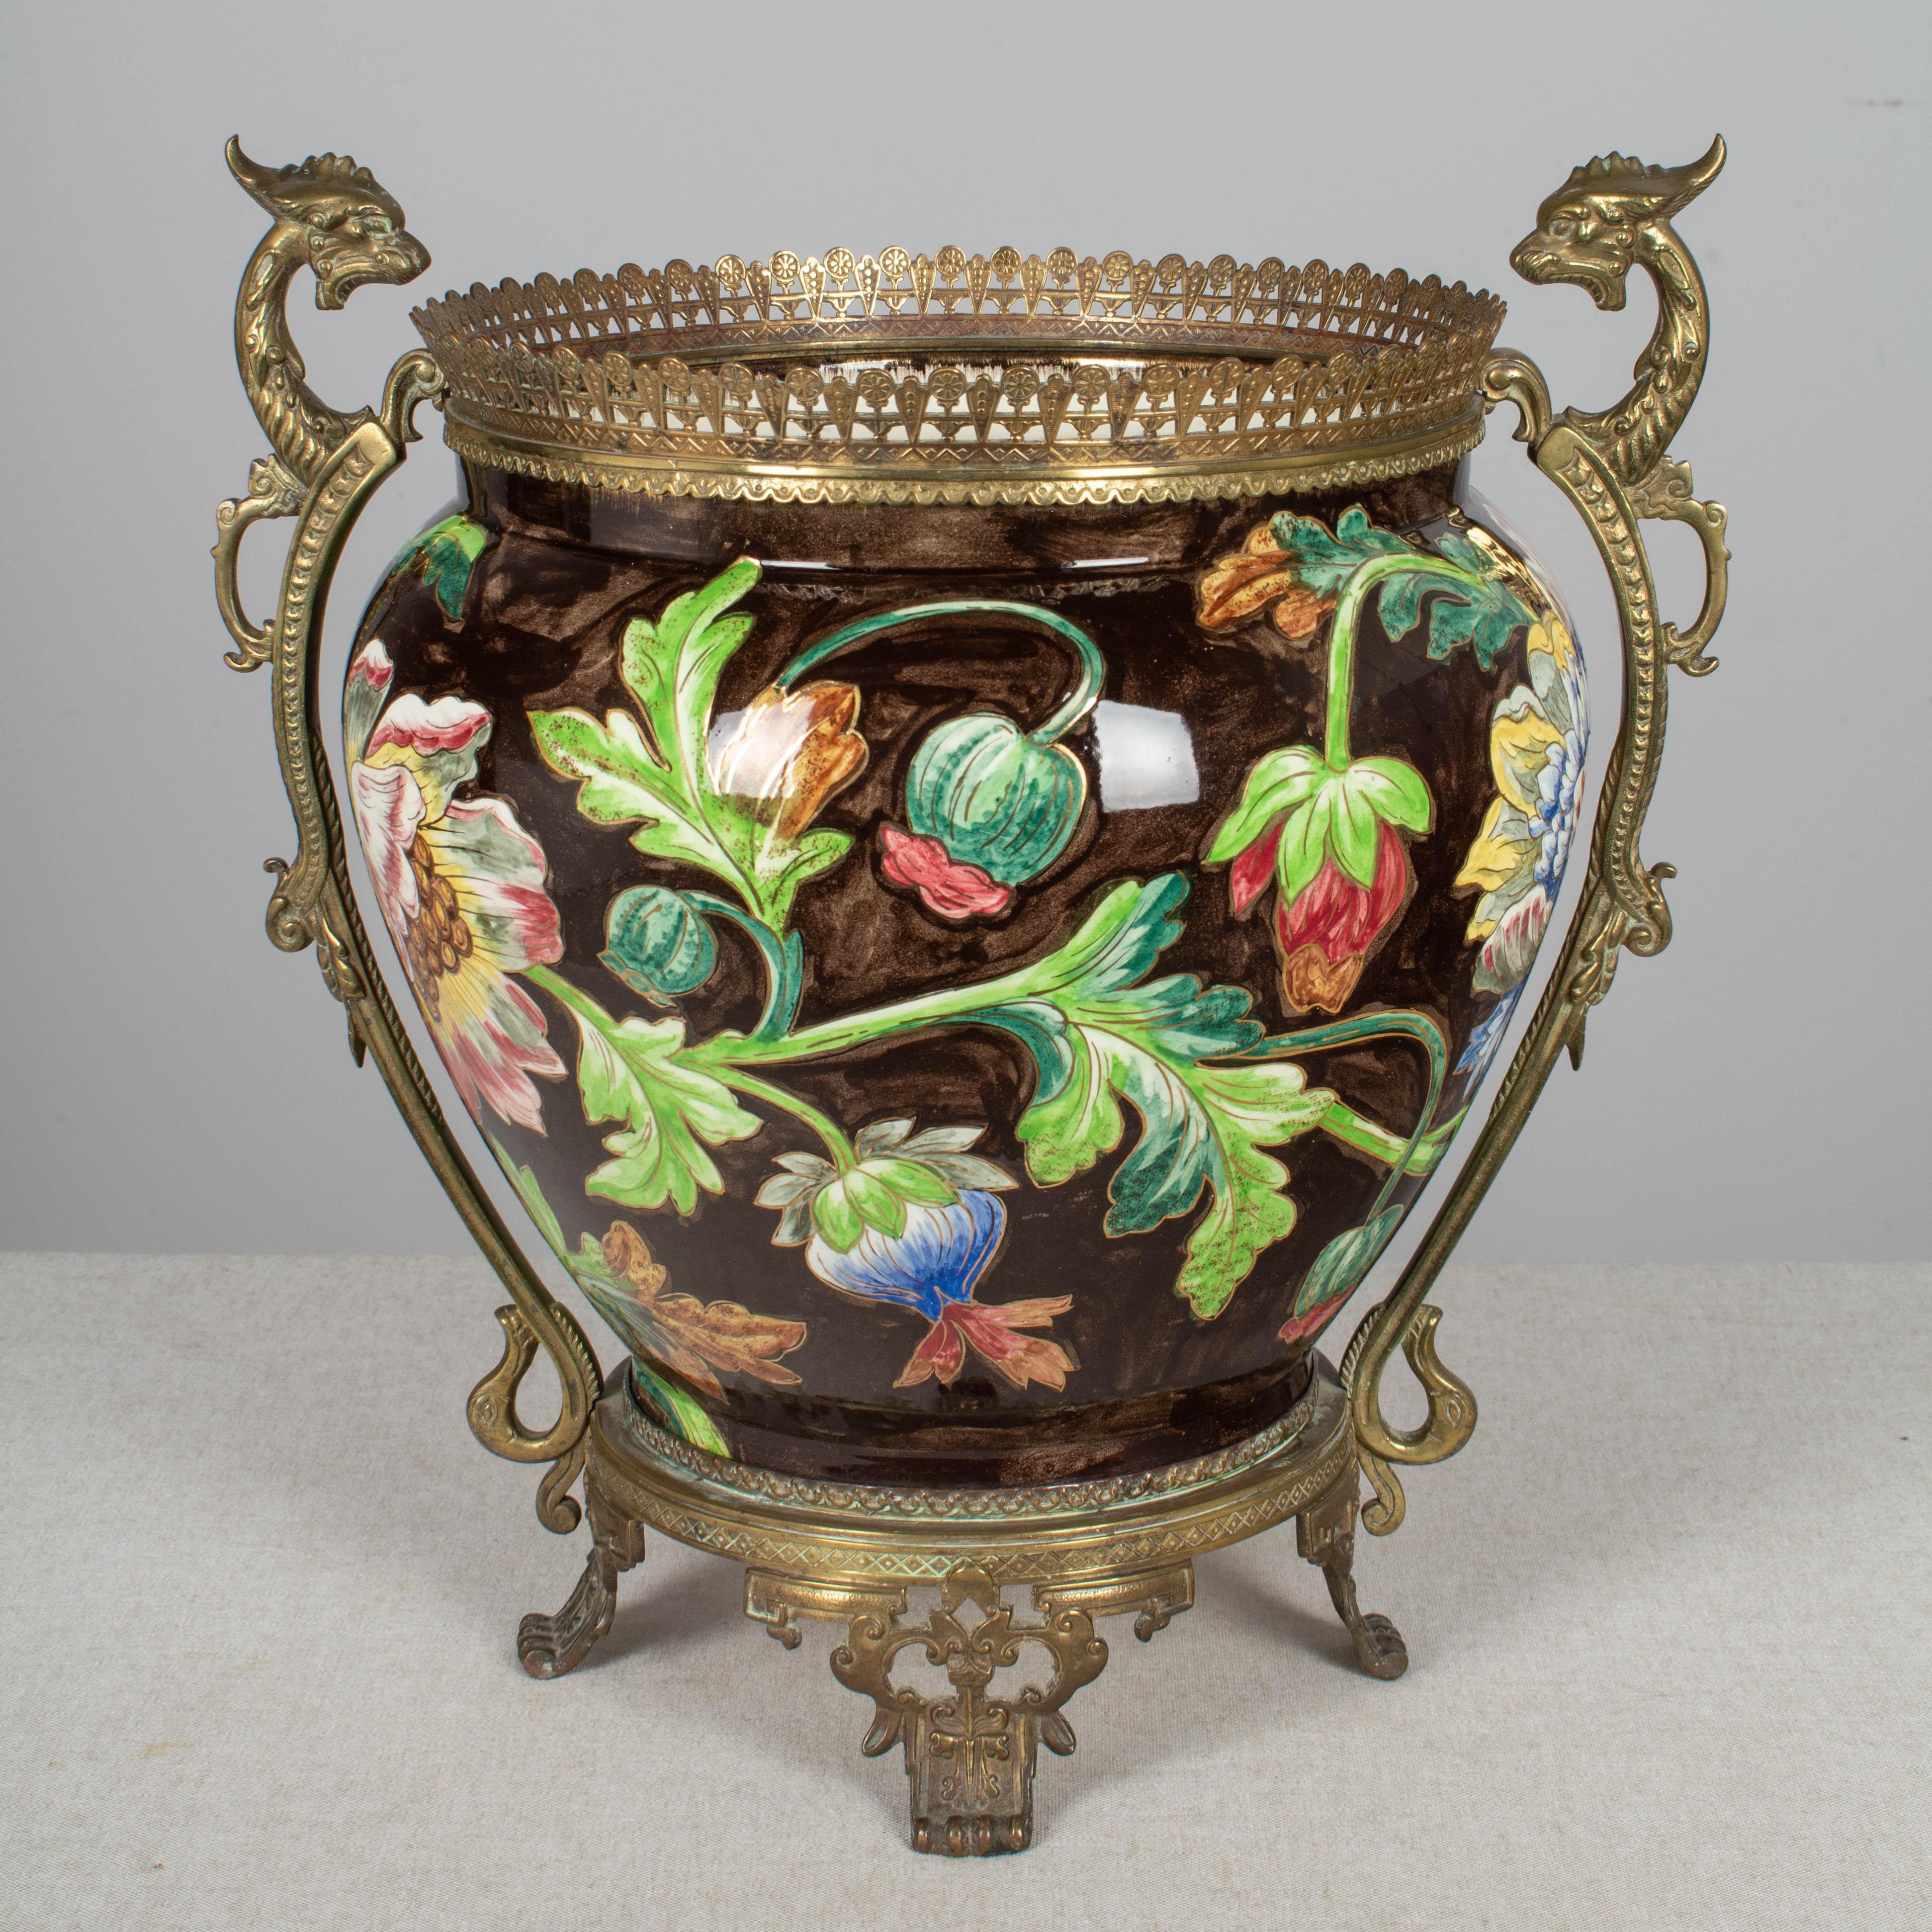 Großer französischer Jugendstil-Pflanztopf oder Übertopf aus glasierter Keramik, in Bronze gefasst, aus Longchamp, Burgund. Lebendige handgemalte bunte Blumen mit leuchtend grünem Laub und metallischen Goldakzenten sind auf einem dunkelbraunen Grund